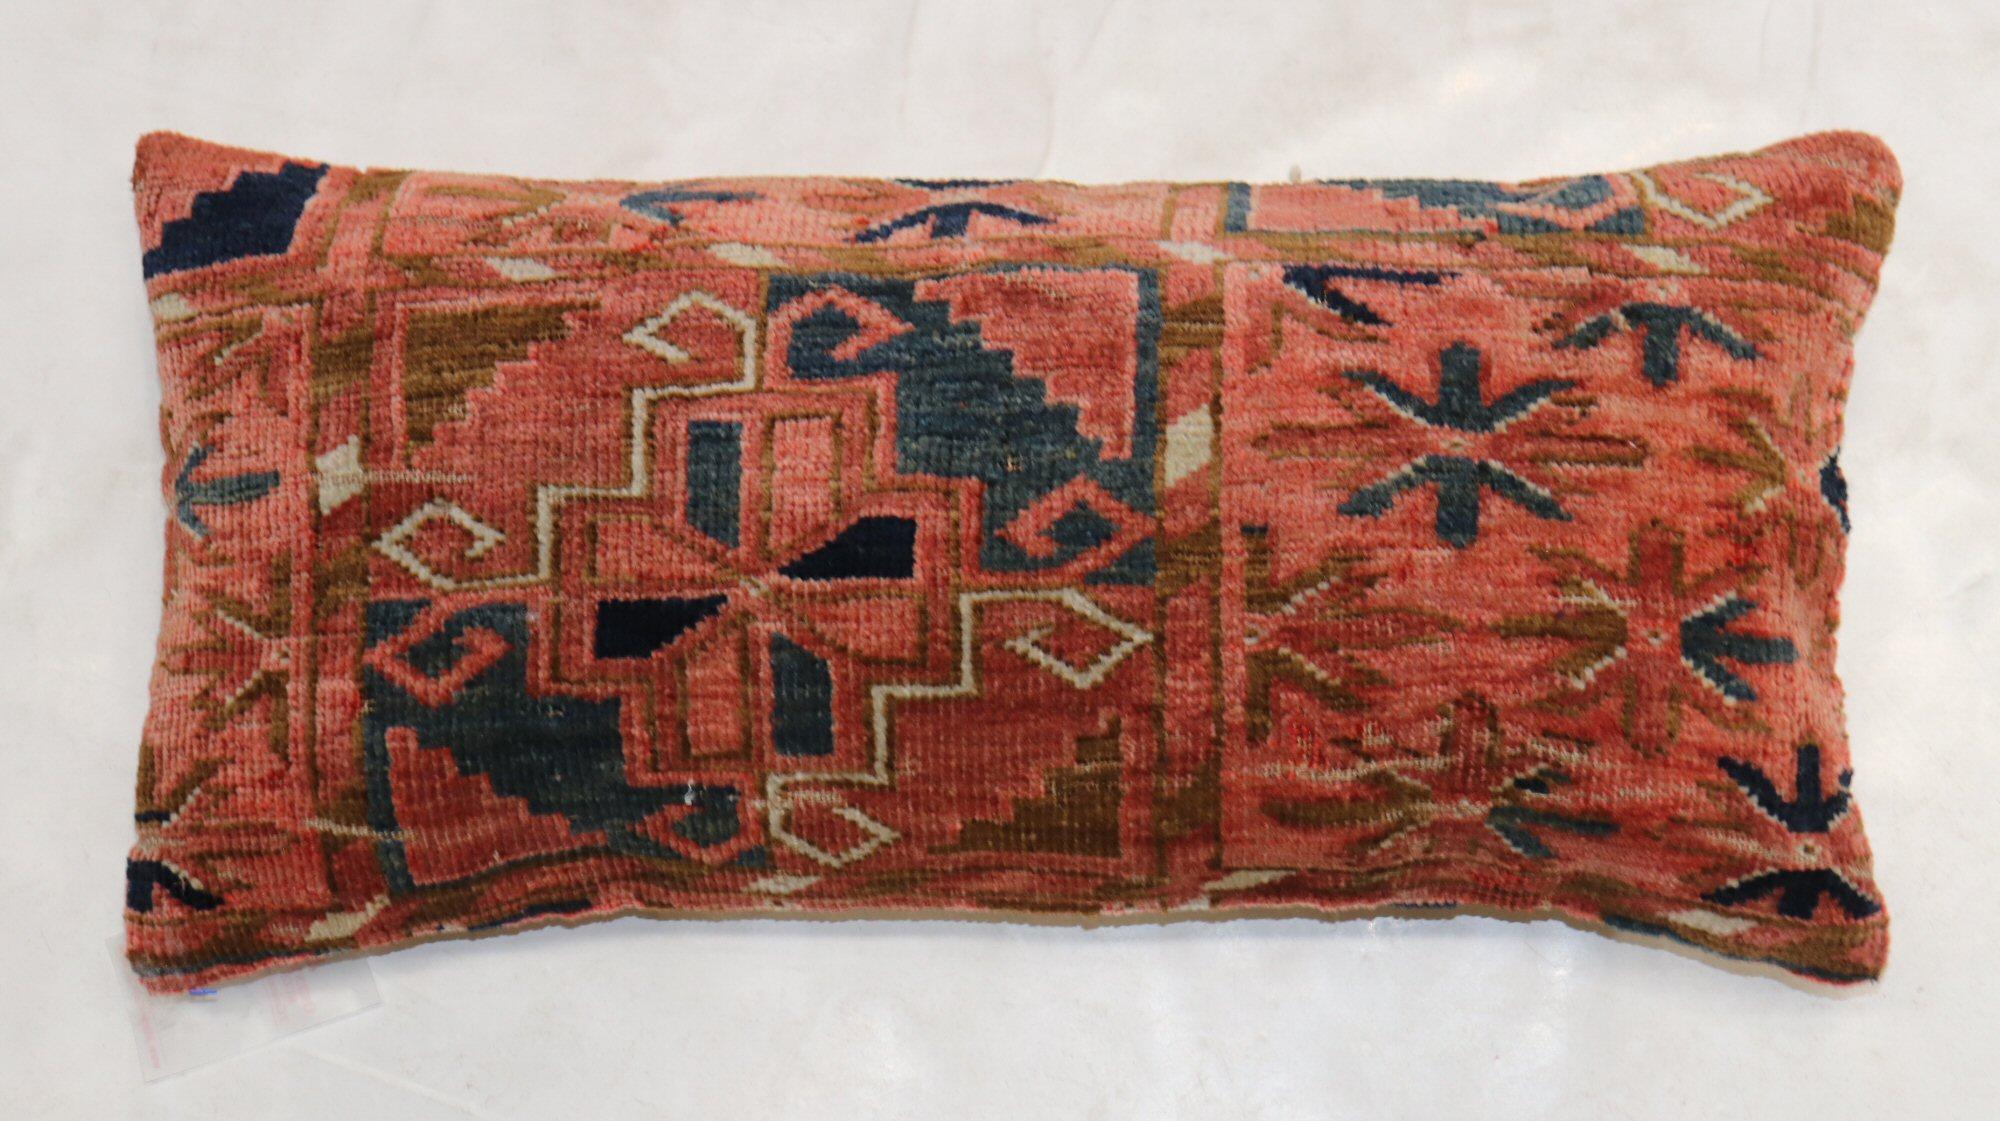 Kissen aus einem Turkeman-Teppich aus dem 19. Jahrhundert in Nackenrollengröße.

Maße: 12